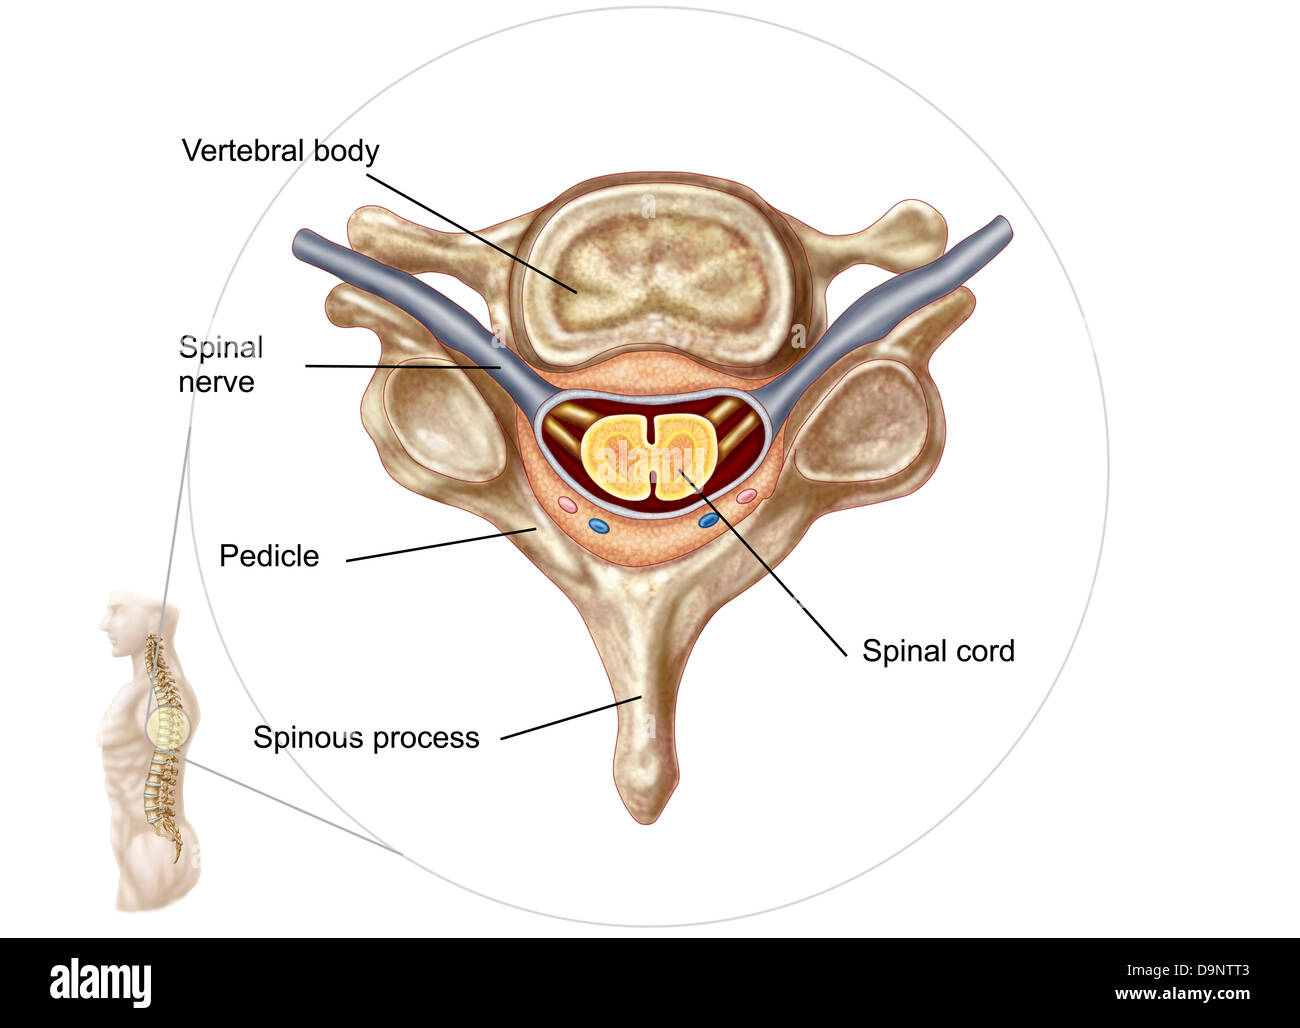 Anatomy of human vertebra. Stock Photo